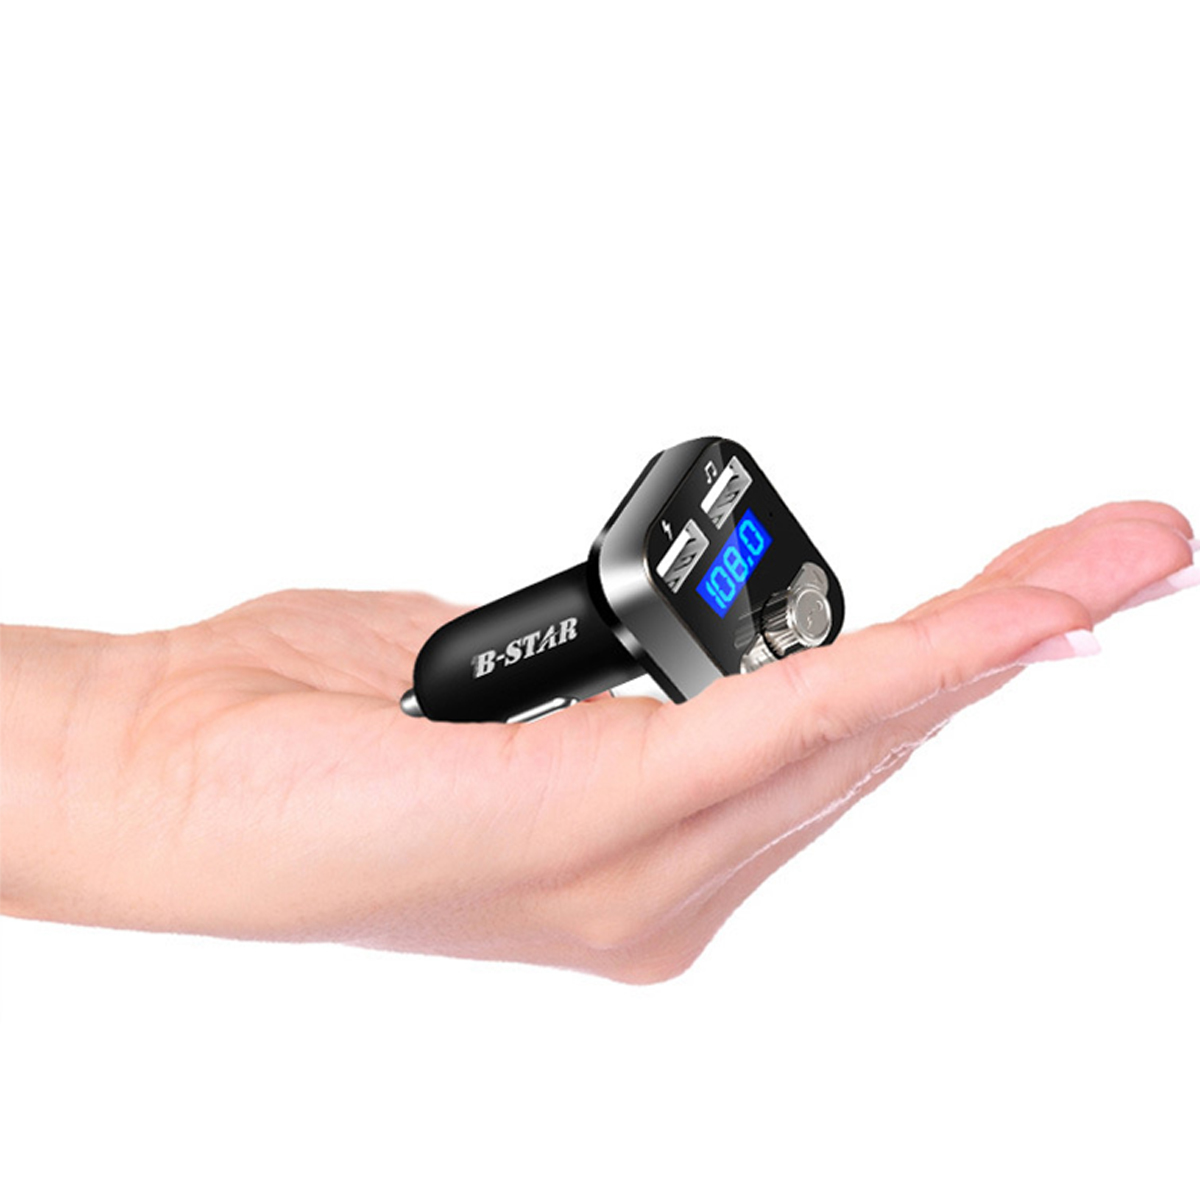 B-STAR Neues Auto Bluetooth MP3 Audio Player Telefon Freisprecheinrichtung Auto MP3 Player Bluetooth 4.0 Version